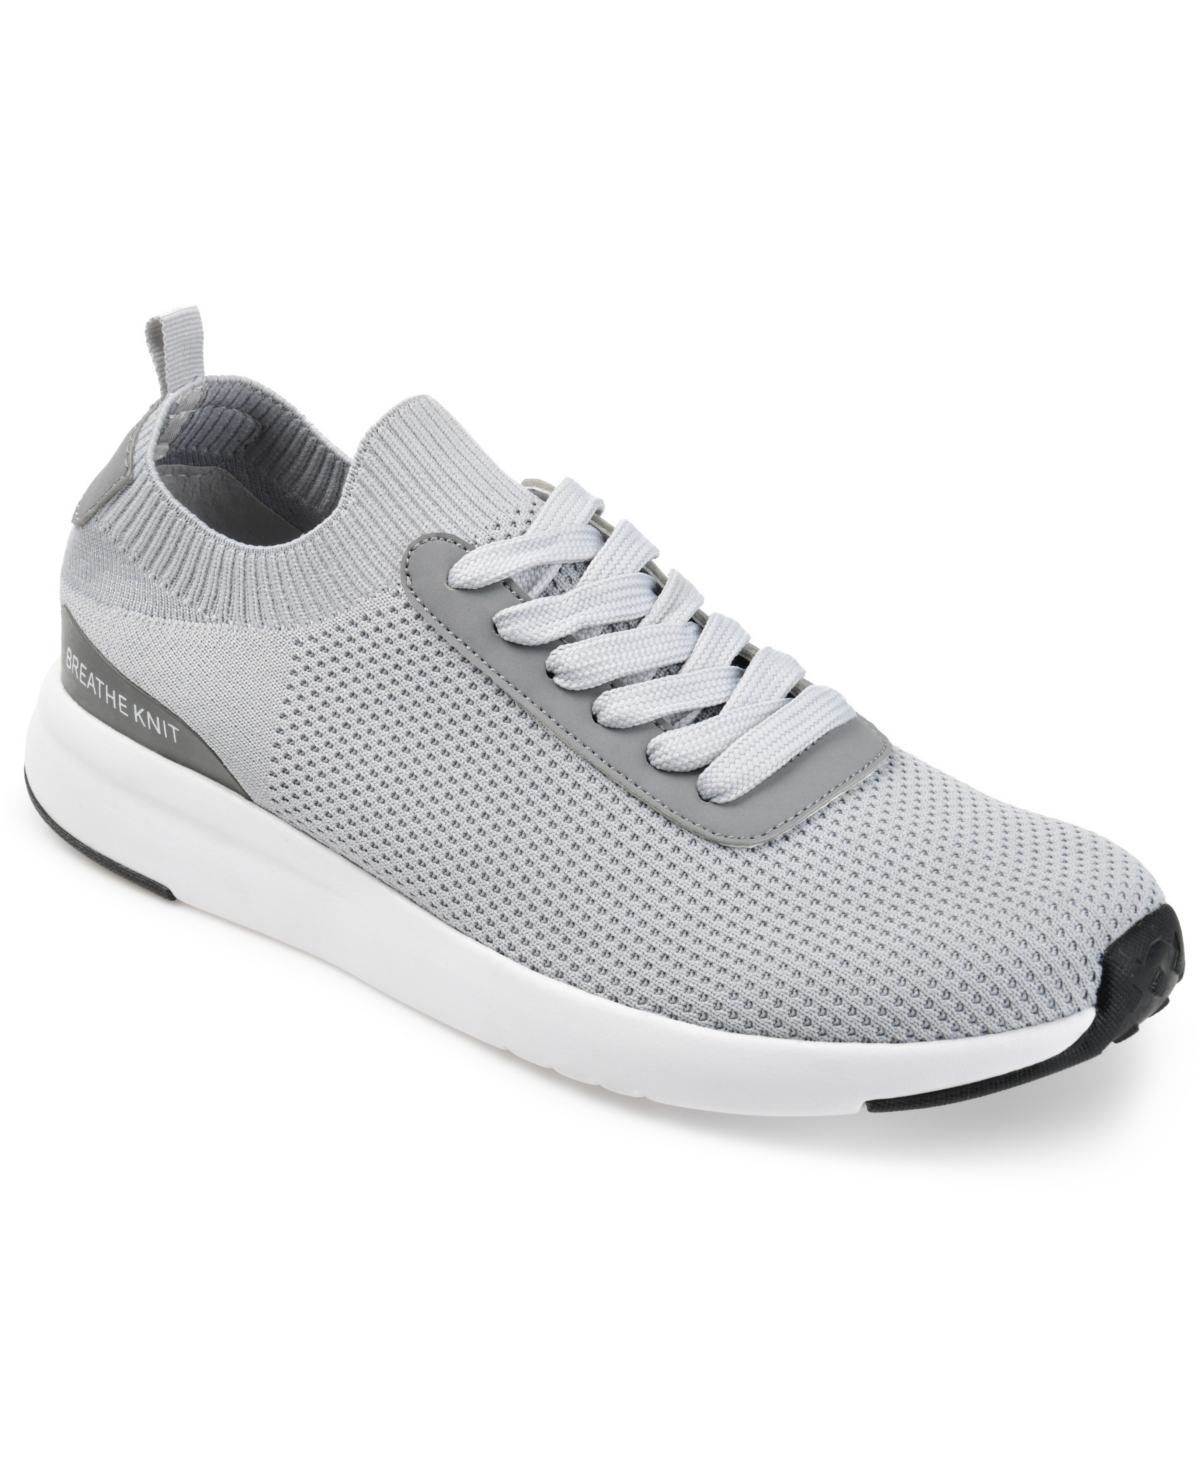 Men's Grady Casual Knit Walking Sneakers - Gray